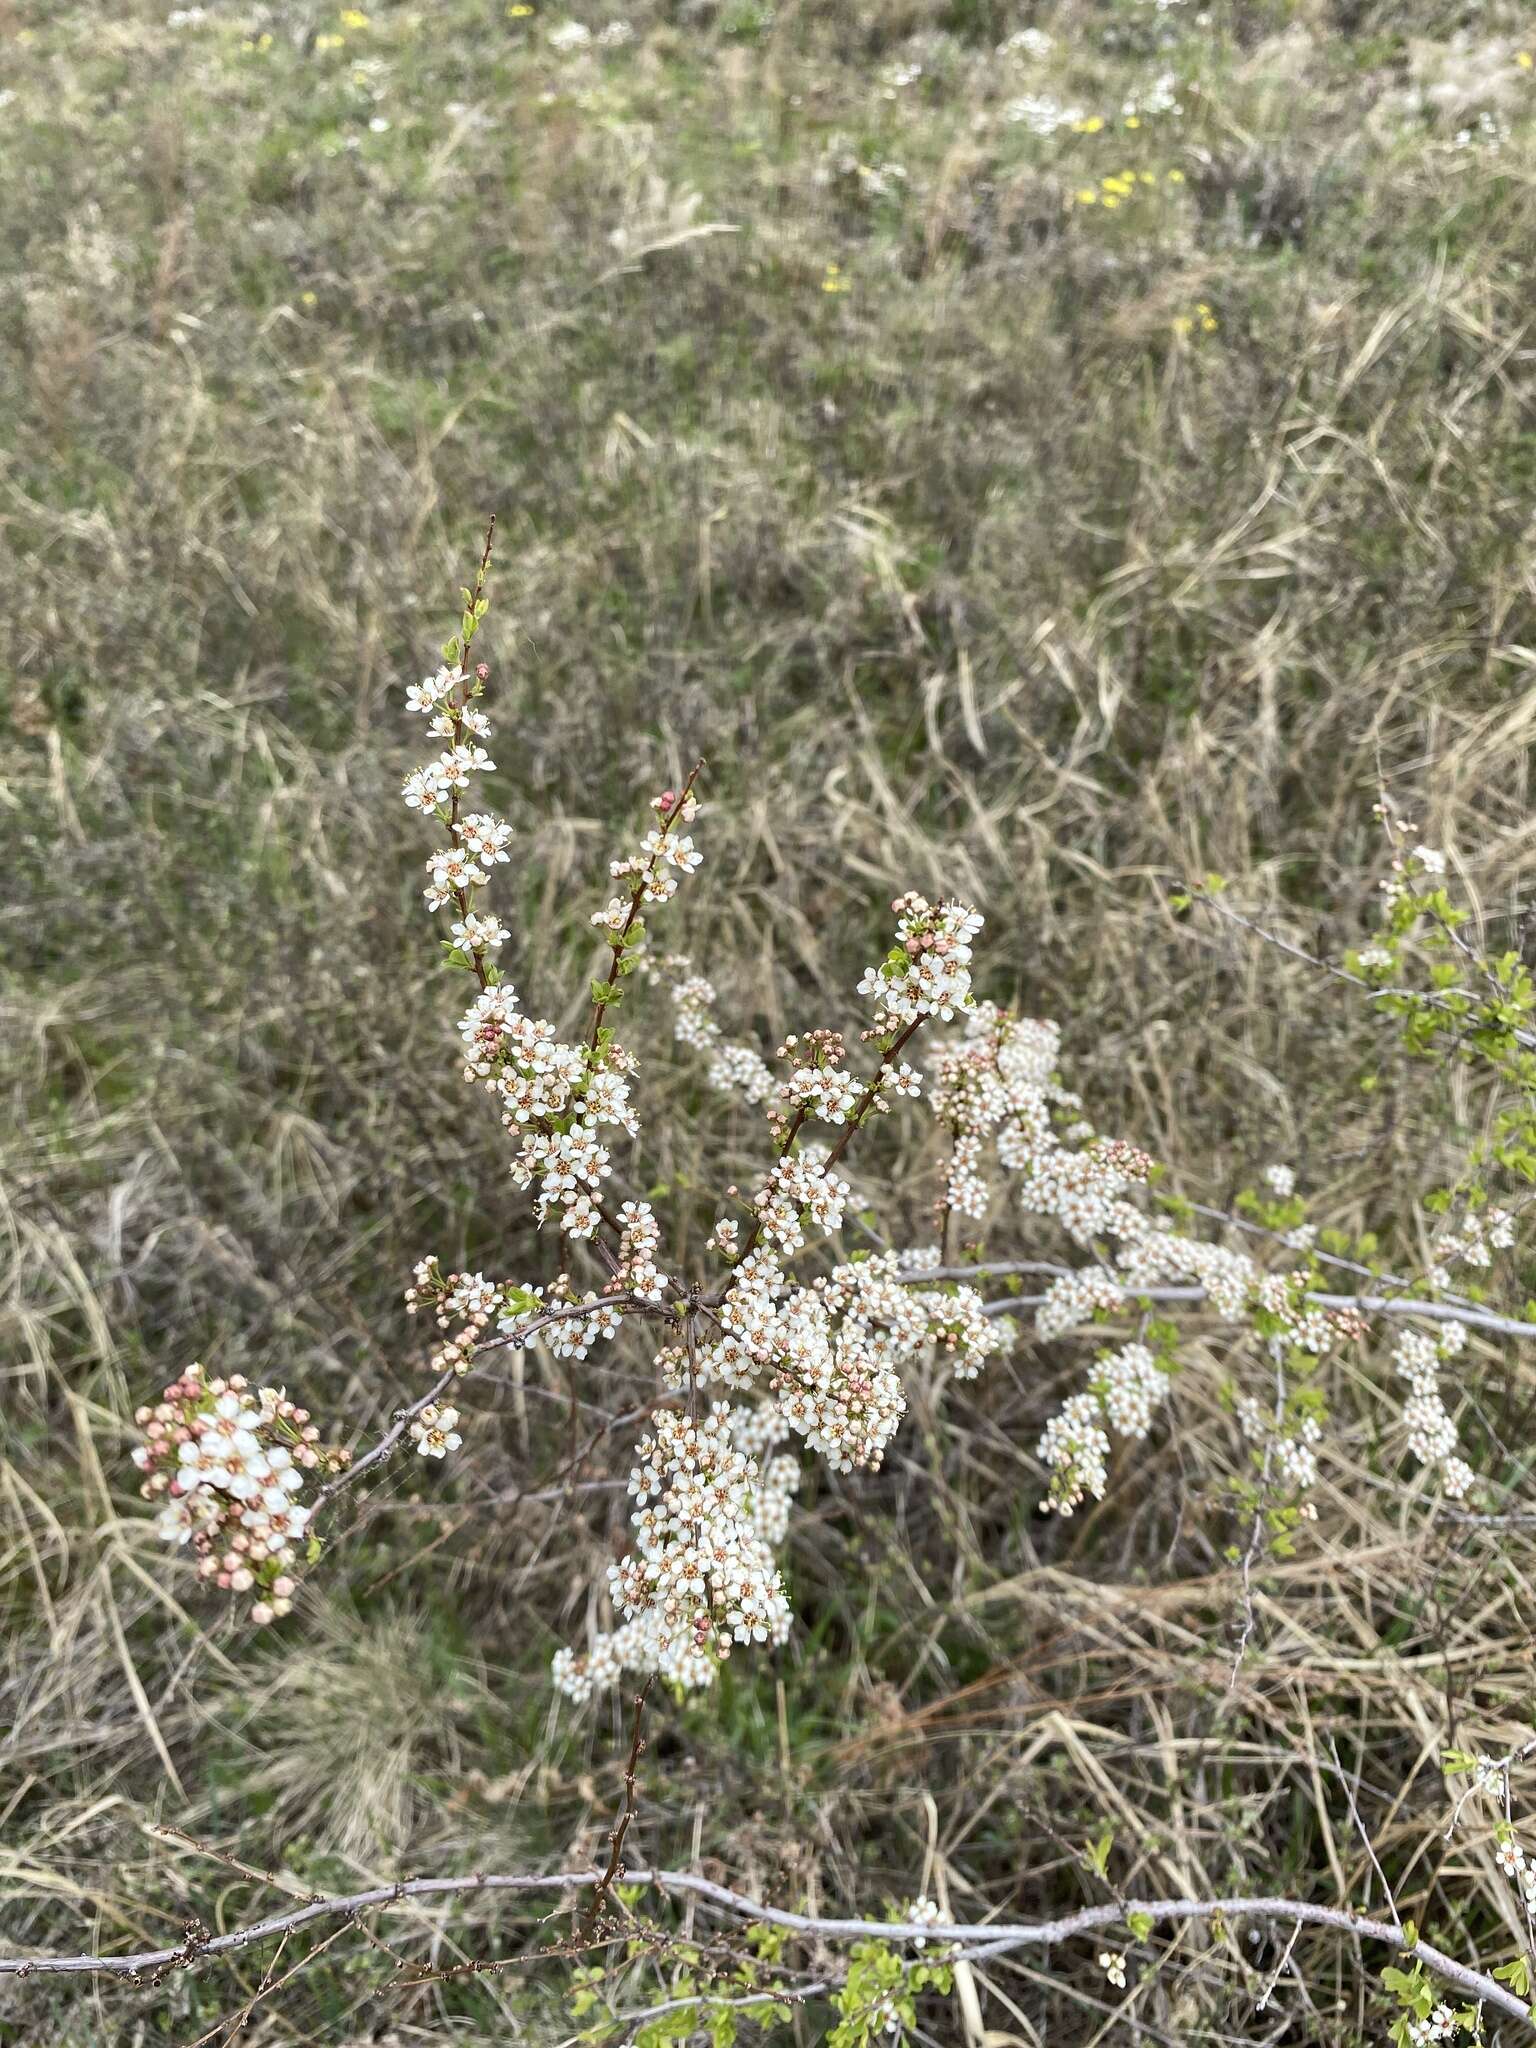 Image of Spiraea aquilegifolia Pall.